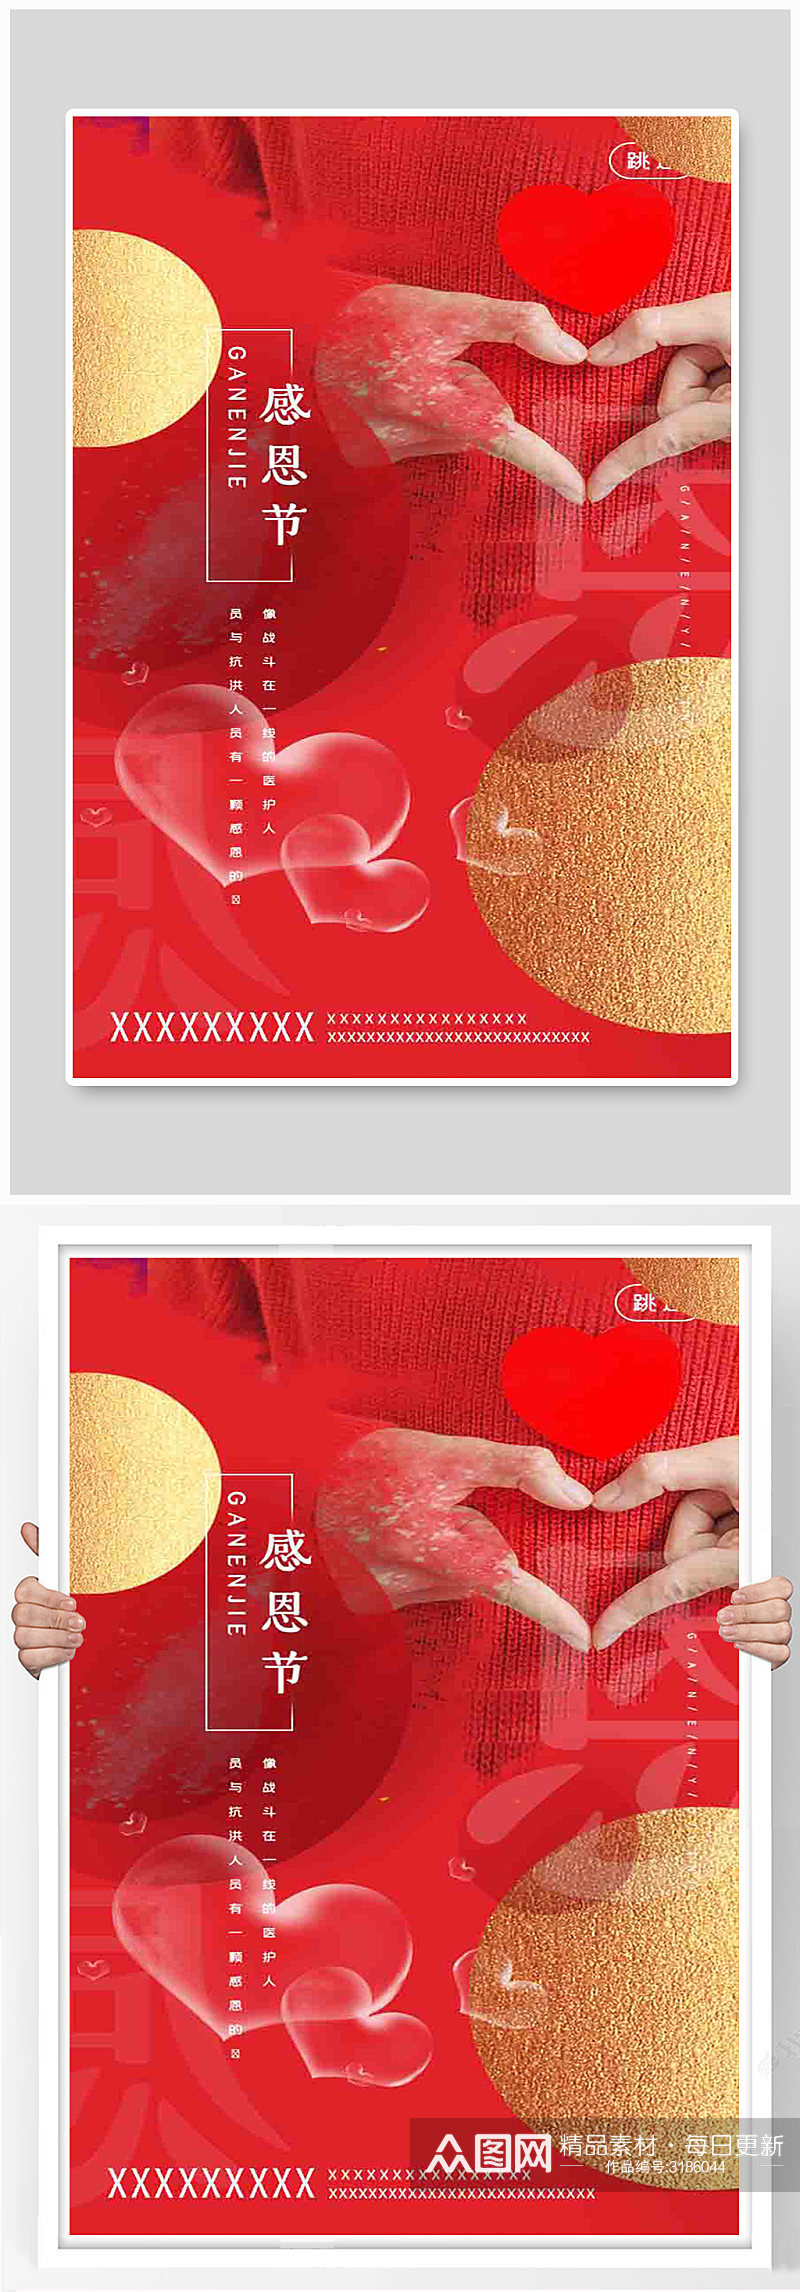 红色简洁爱心感恩节启动页海报素材